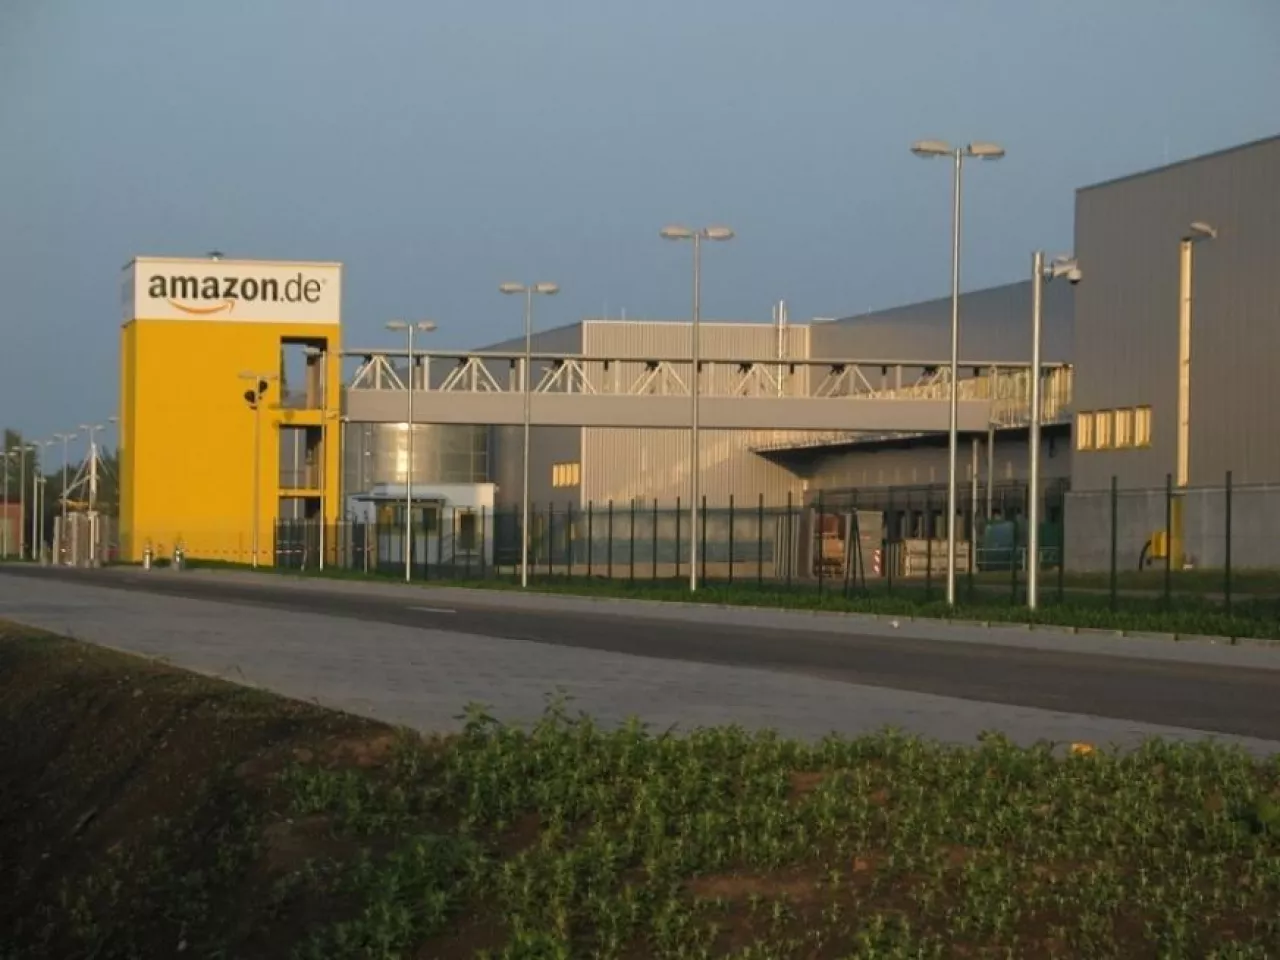 Centrum logistyczne Amazona w Lipsku (fot. Medien-gbr, CC-BY-SA-3.0)